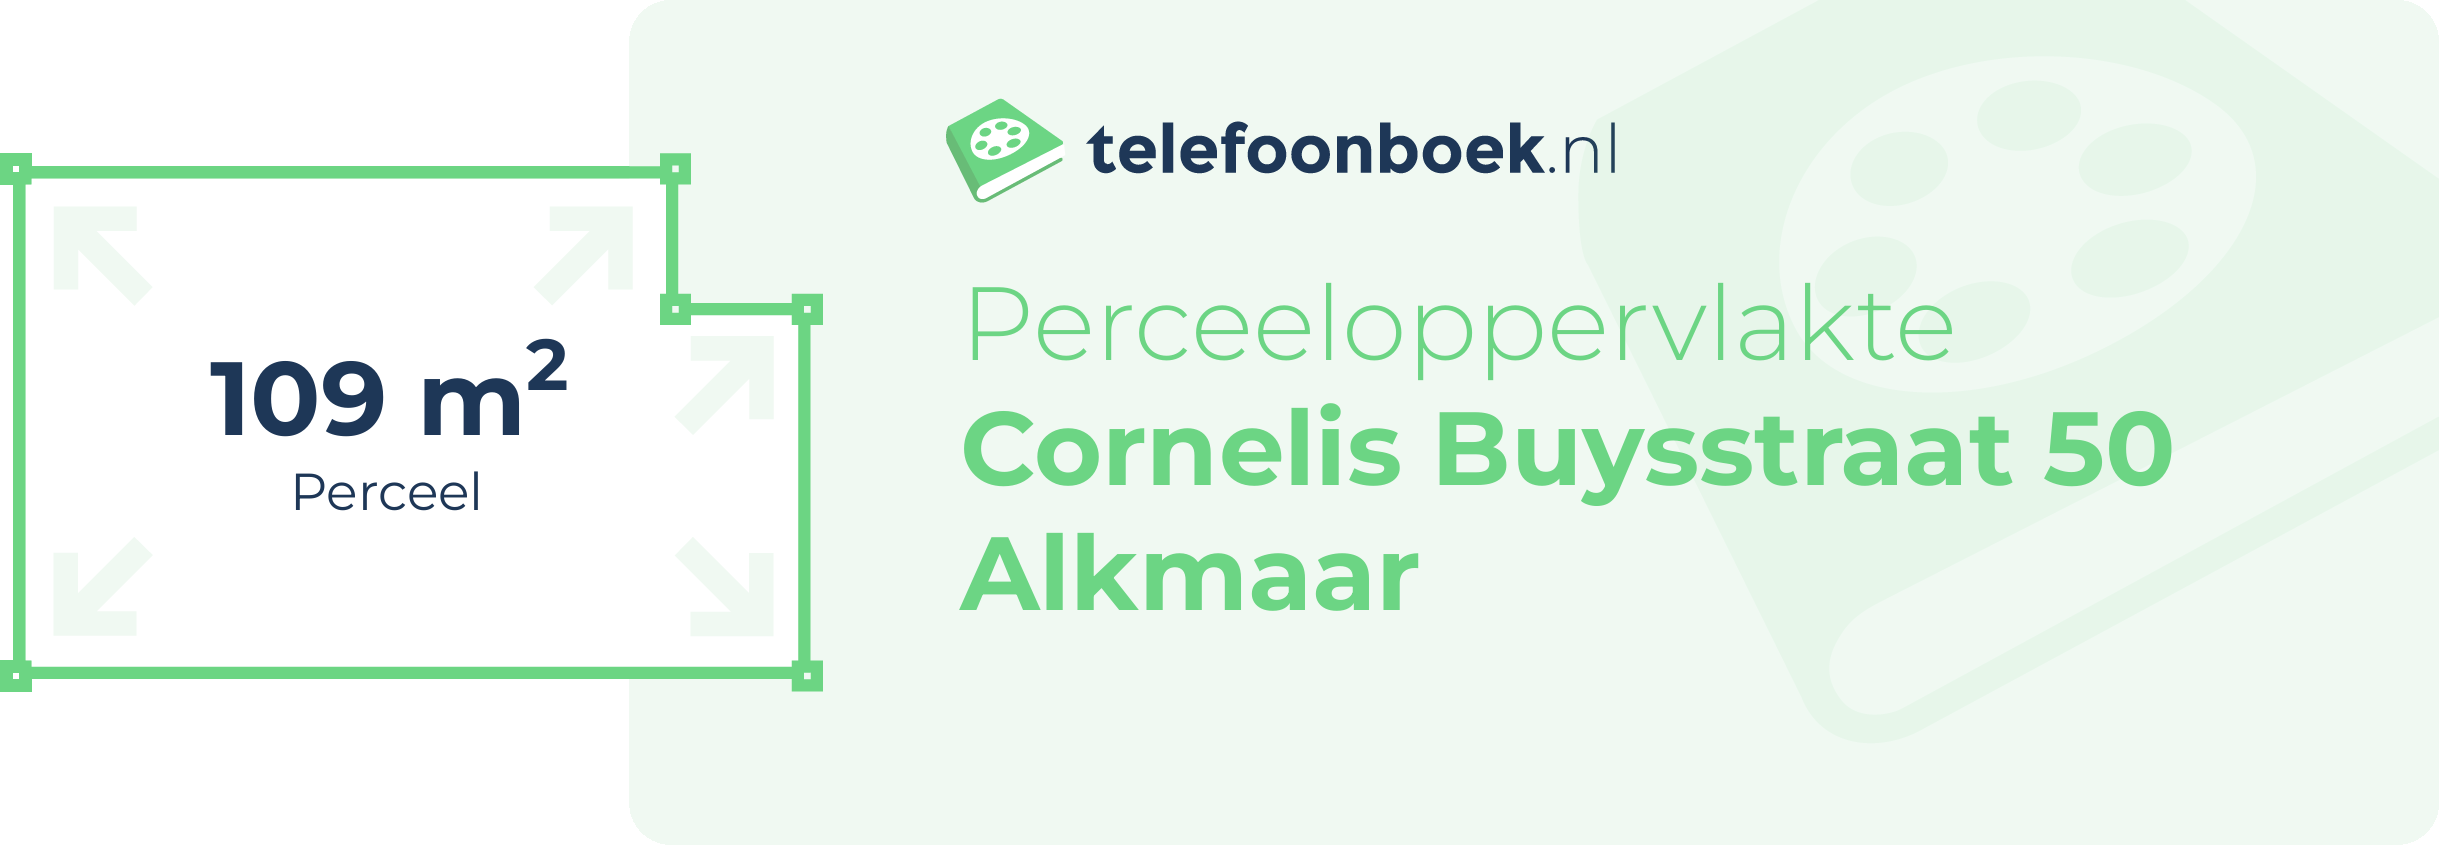 Perceeloppervlakte Cornelis Buysstraat 50 Alkmaar